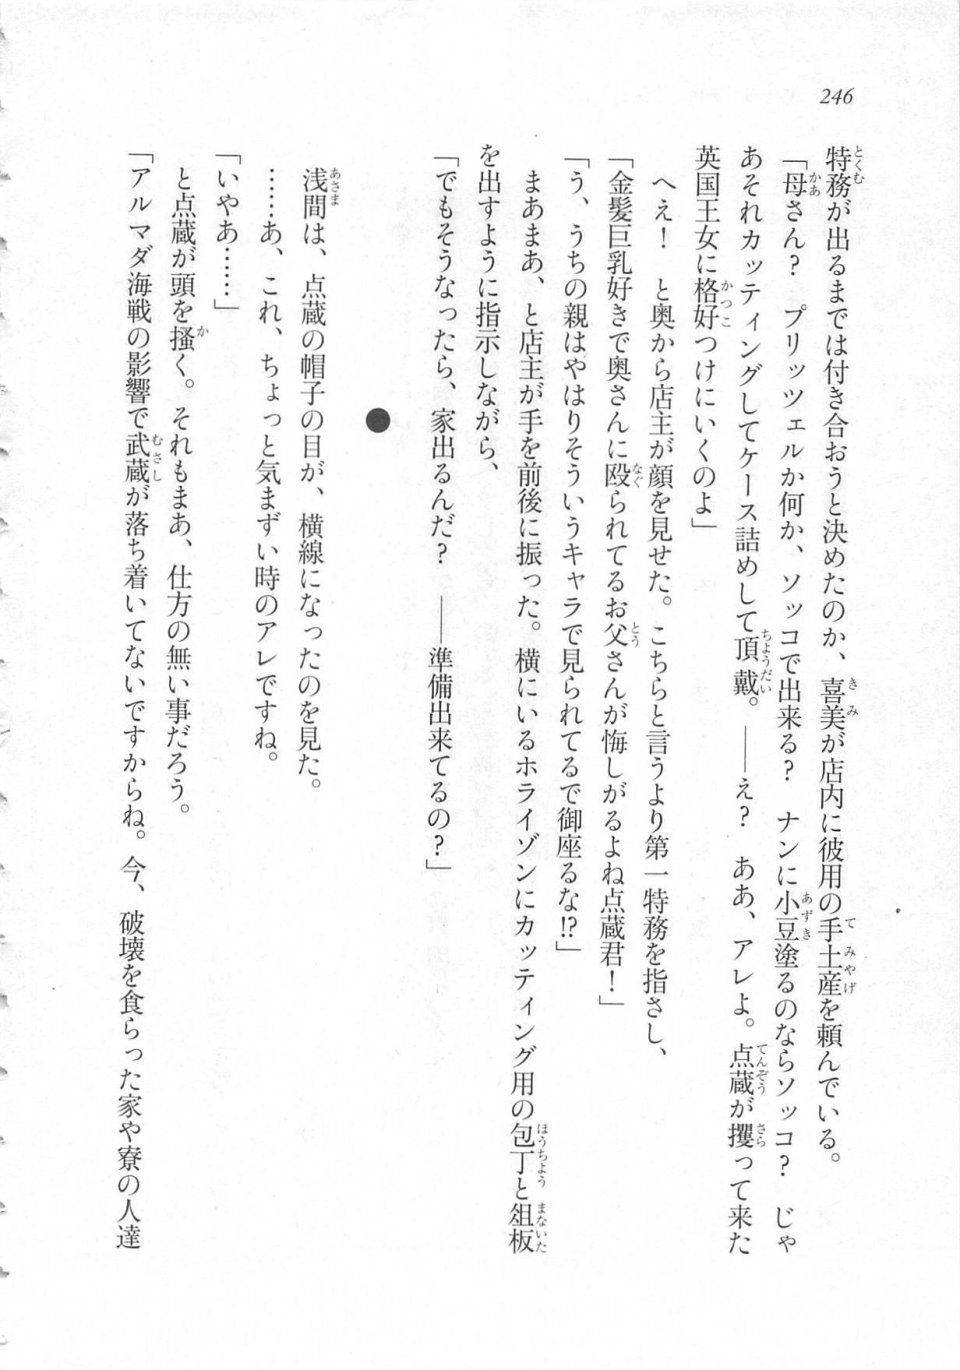 Kyoukai Senjou no Horizon LN Sidestory Vol 3 - Photo #250